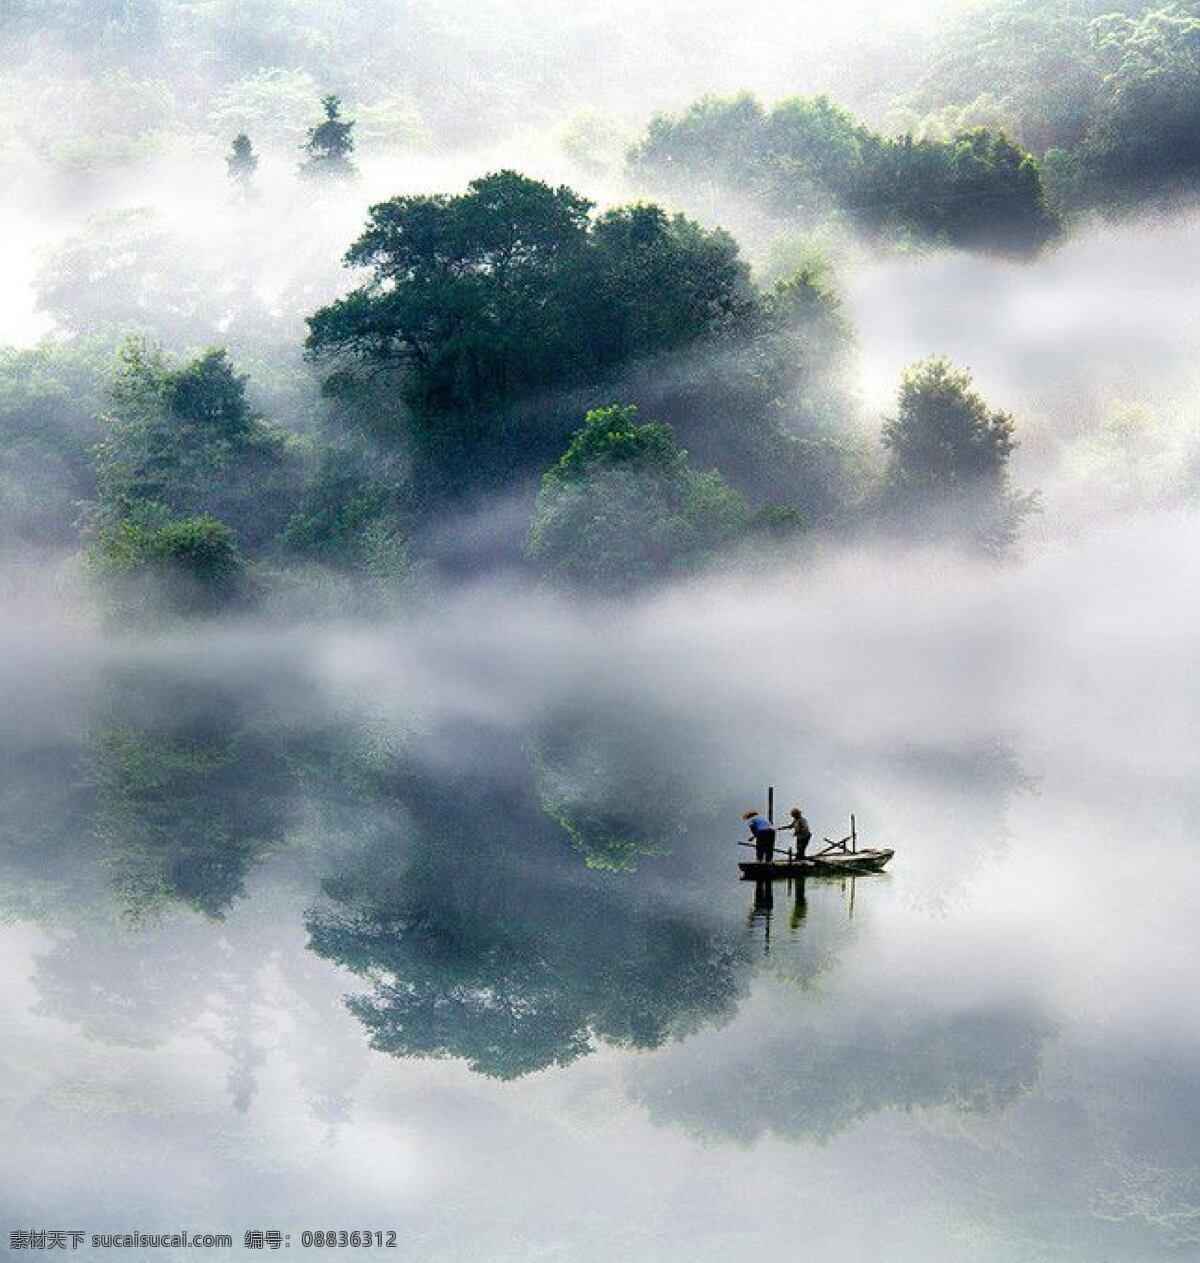 雾 神秘 山 水 湖面 空灵 自然景观 山水风景